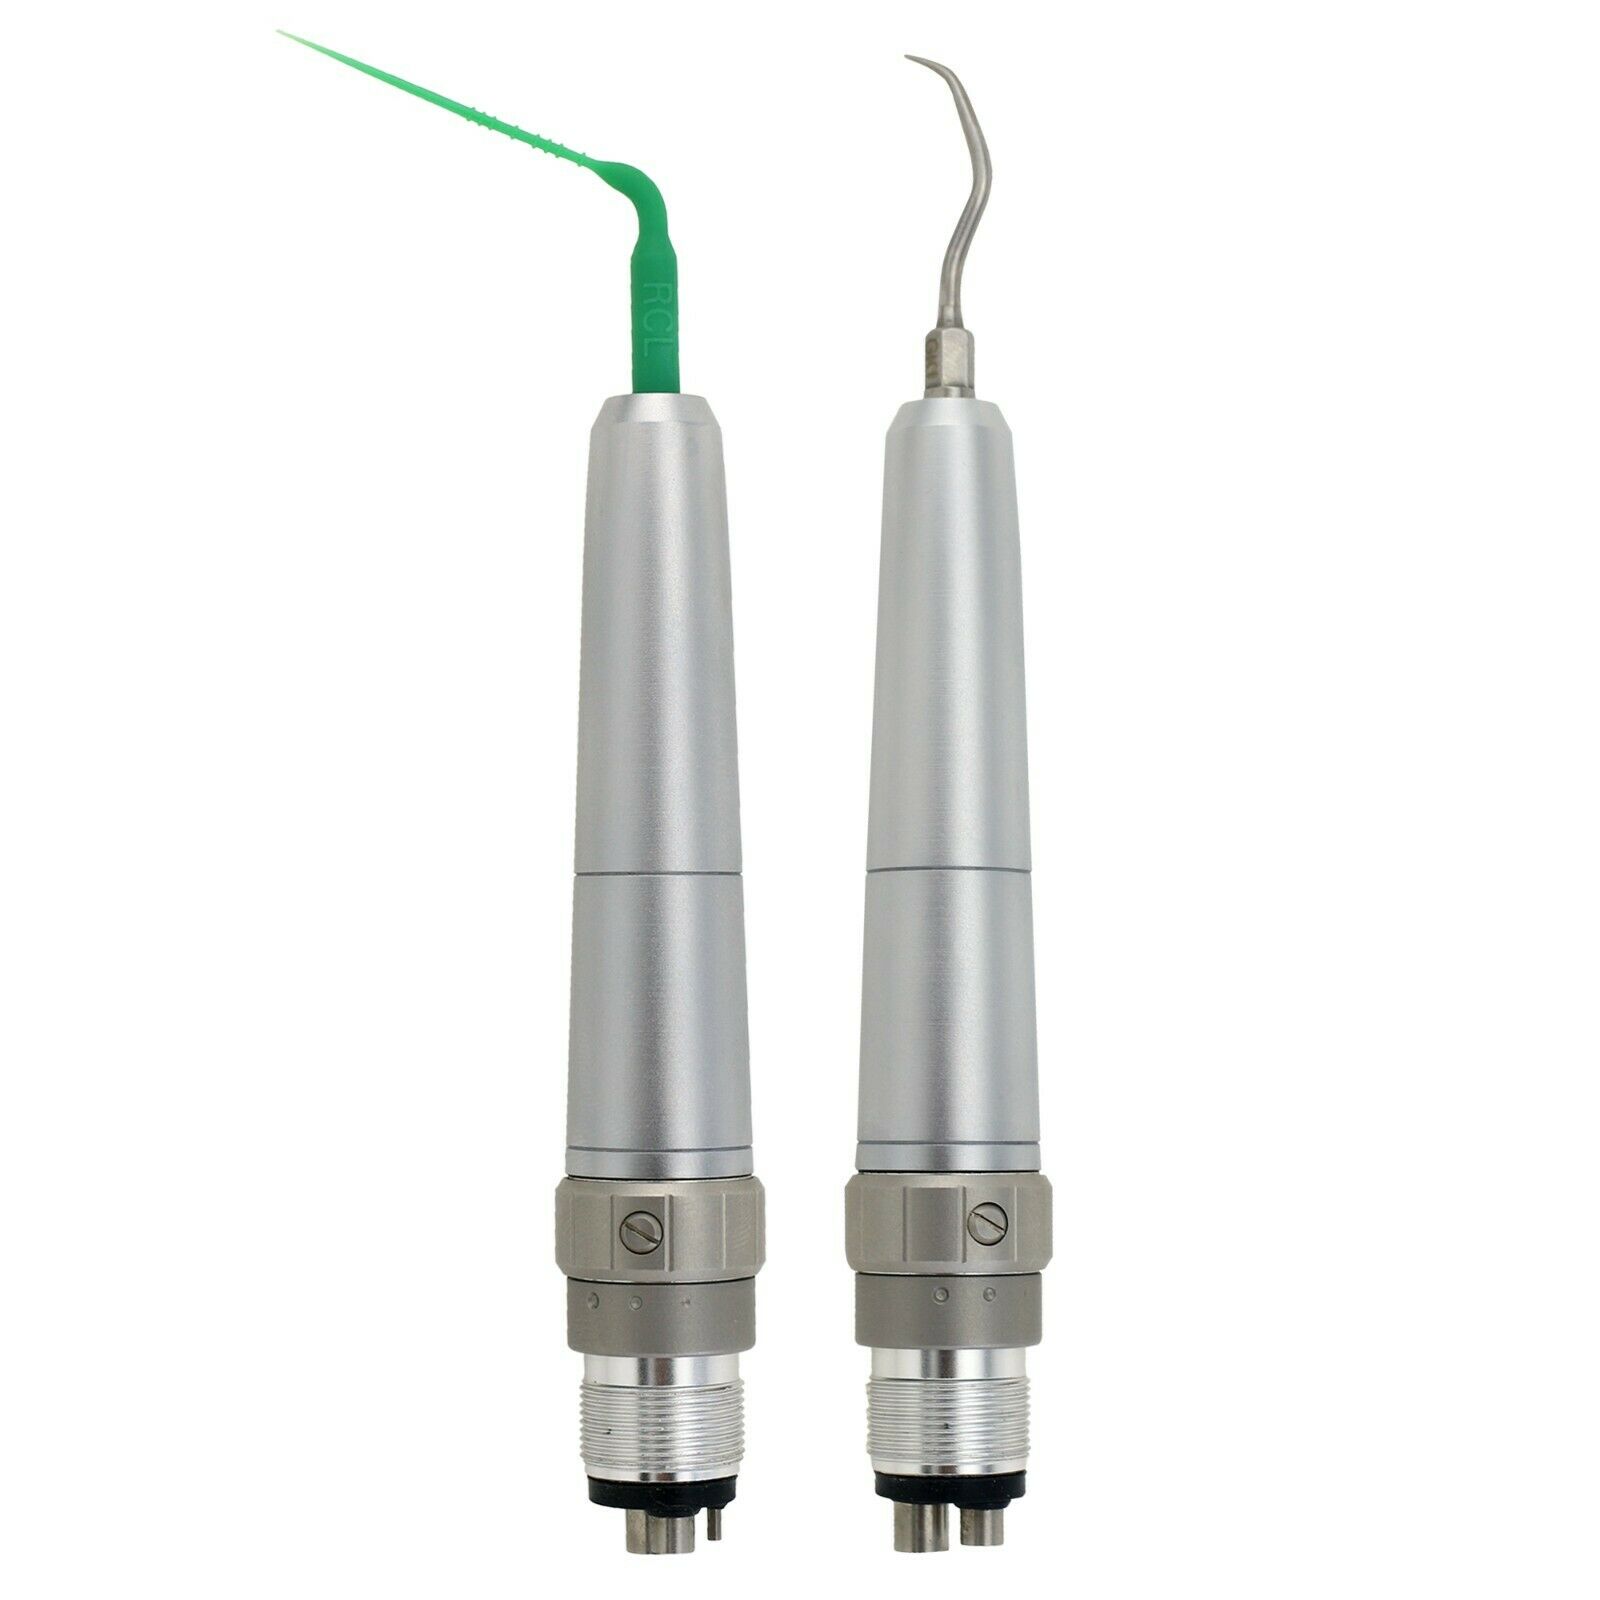 Sonic Powered puntas de irrigación para endodoncia & kit de escalador de aire dental